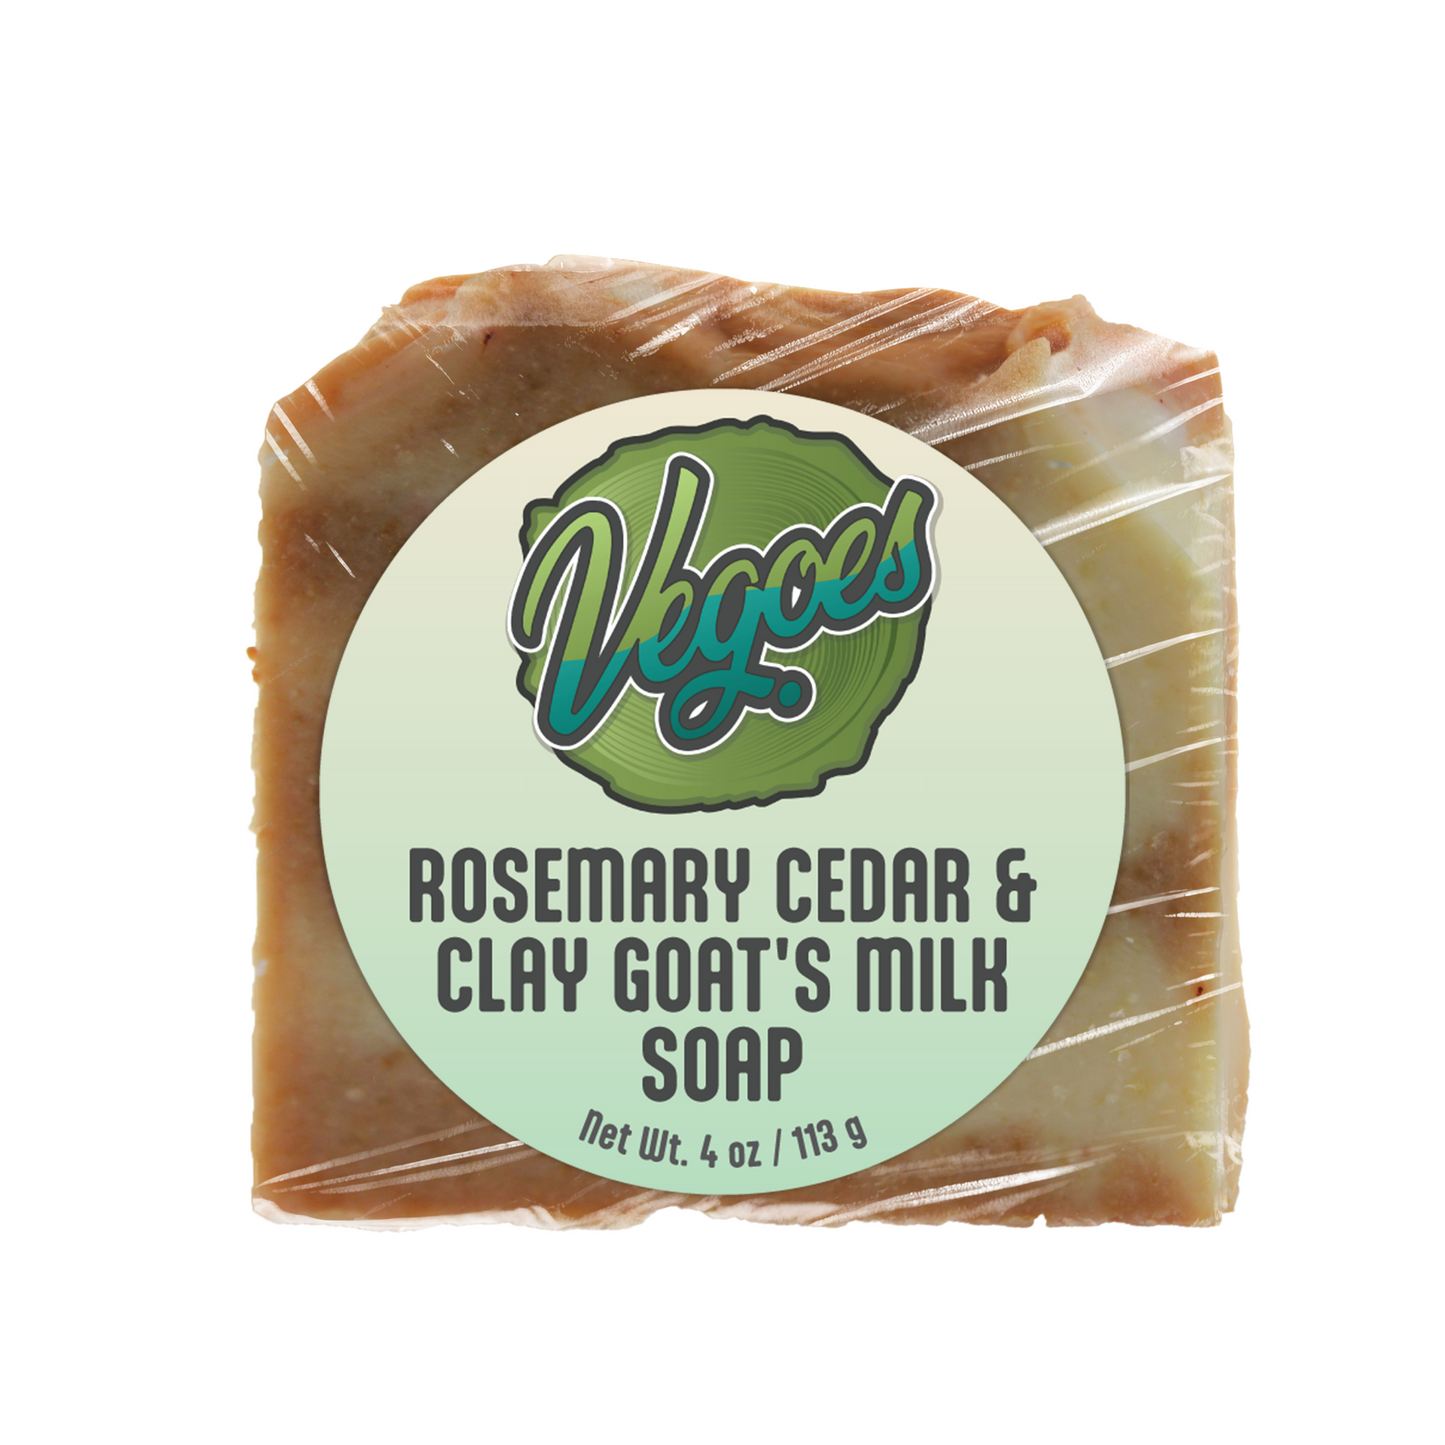 Rosemary Cedar & Clay Goat's Milk Soap